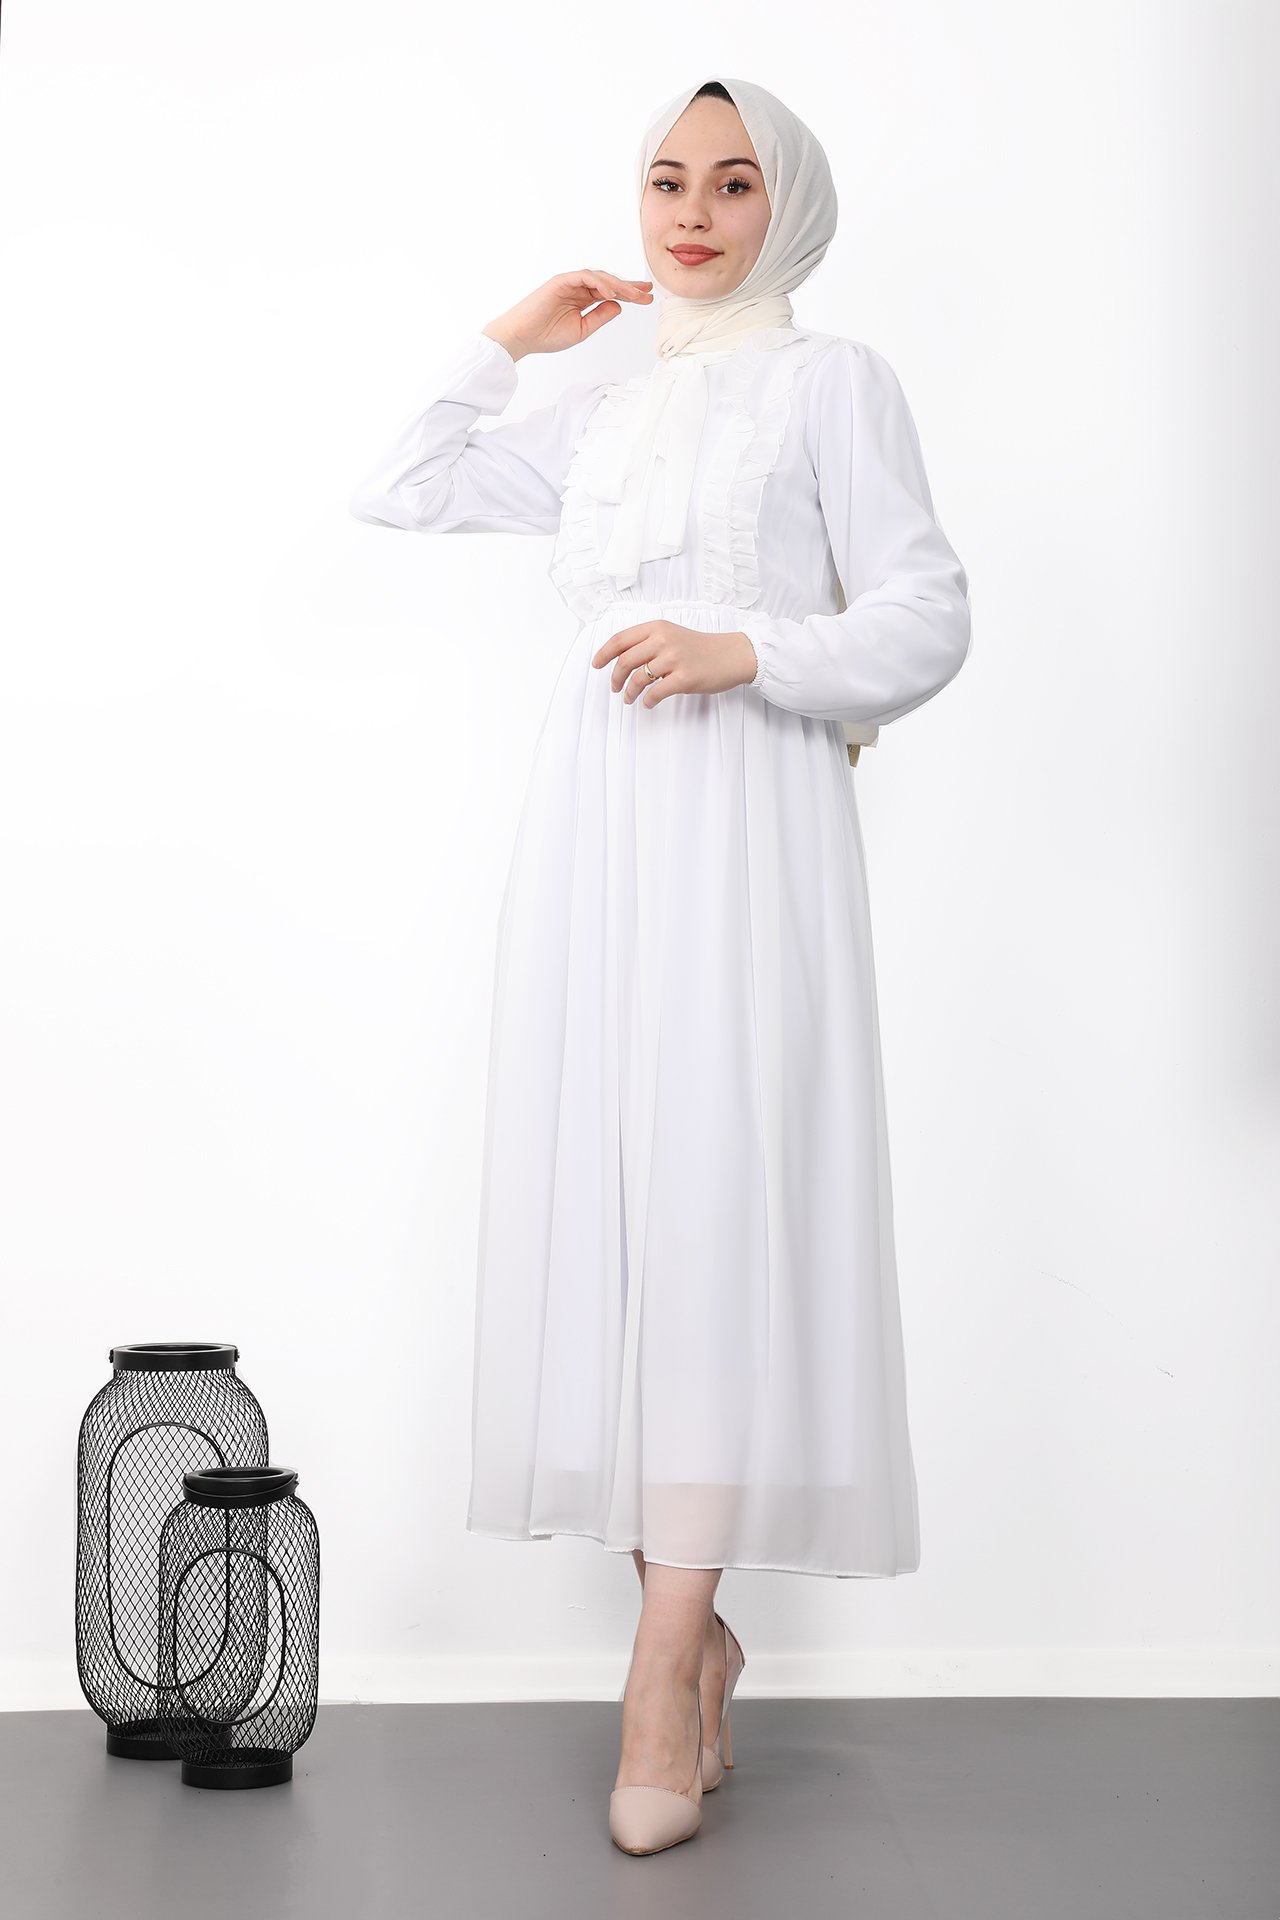 GİZAGİYİM - Fırfırlı Şifon Tesettür Elbise Beyaz